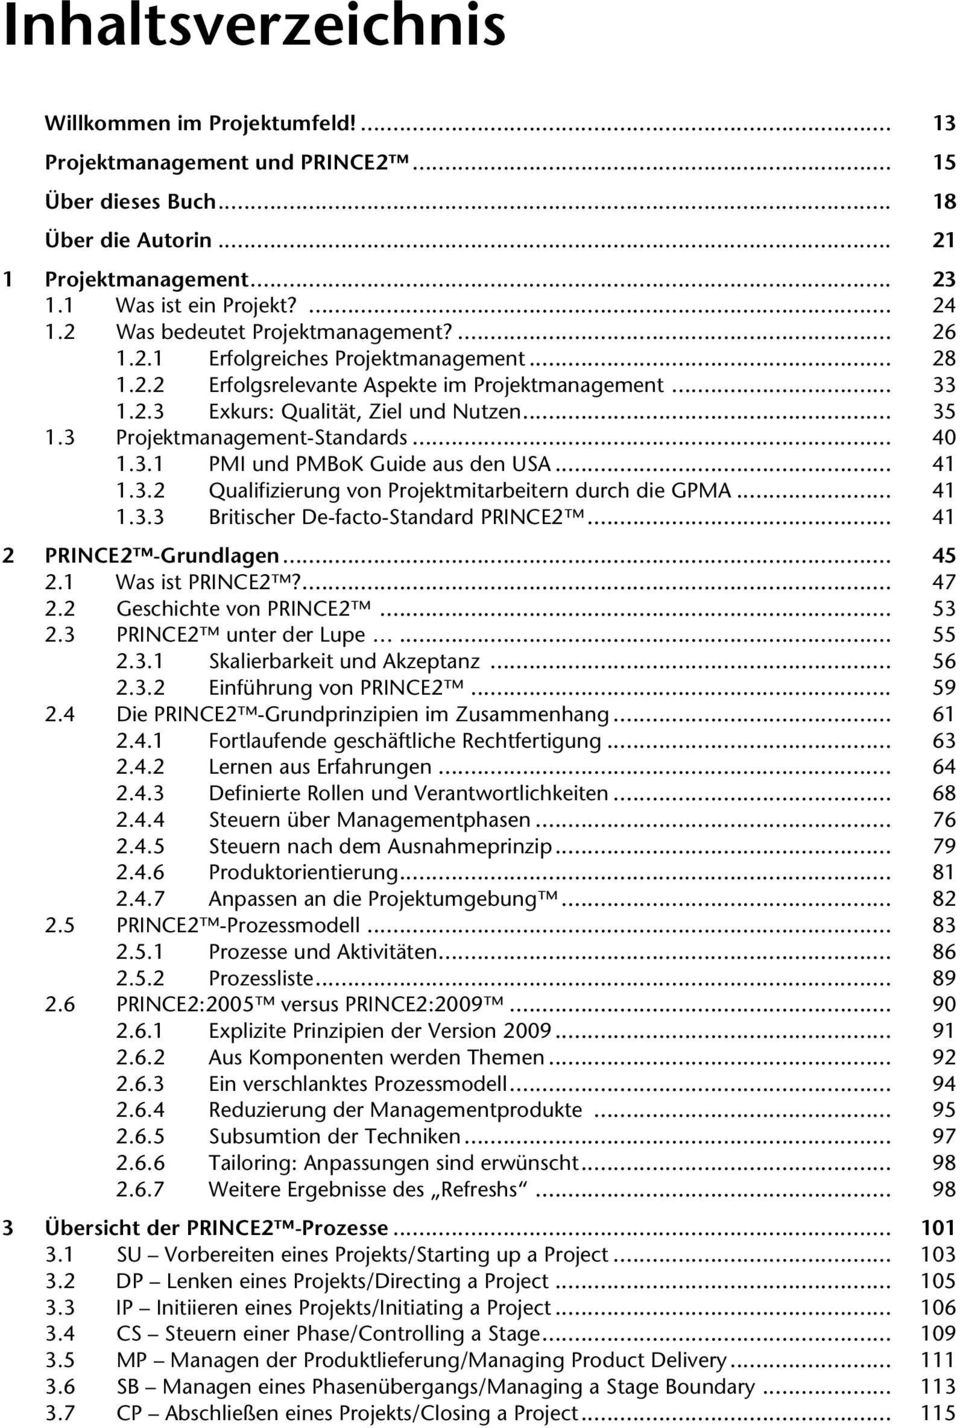 3 Projektmanagement-Standards... 40 1.3.1 PMI und PMBoK Guide aus den USA... 41 1.3.2 Qualifizierung von Projektmitarbeitern durch die GPMA... 41 1.3.3 Britischer De-facto-Standard PRINCE2.